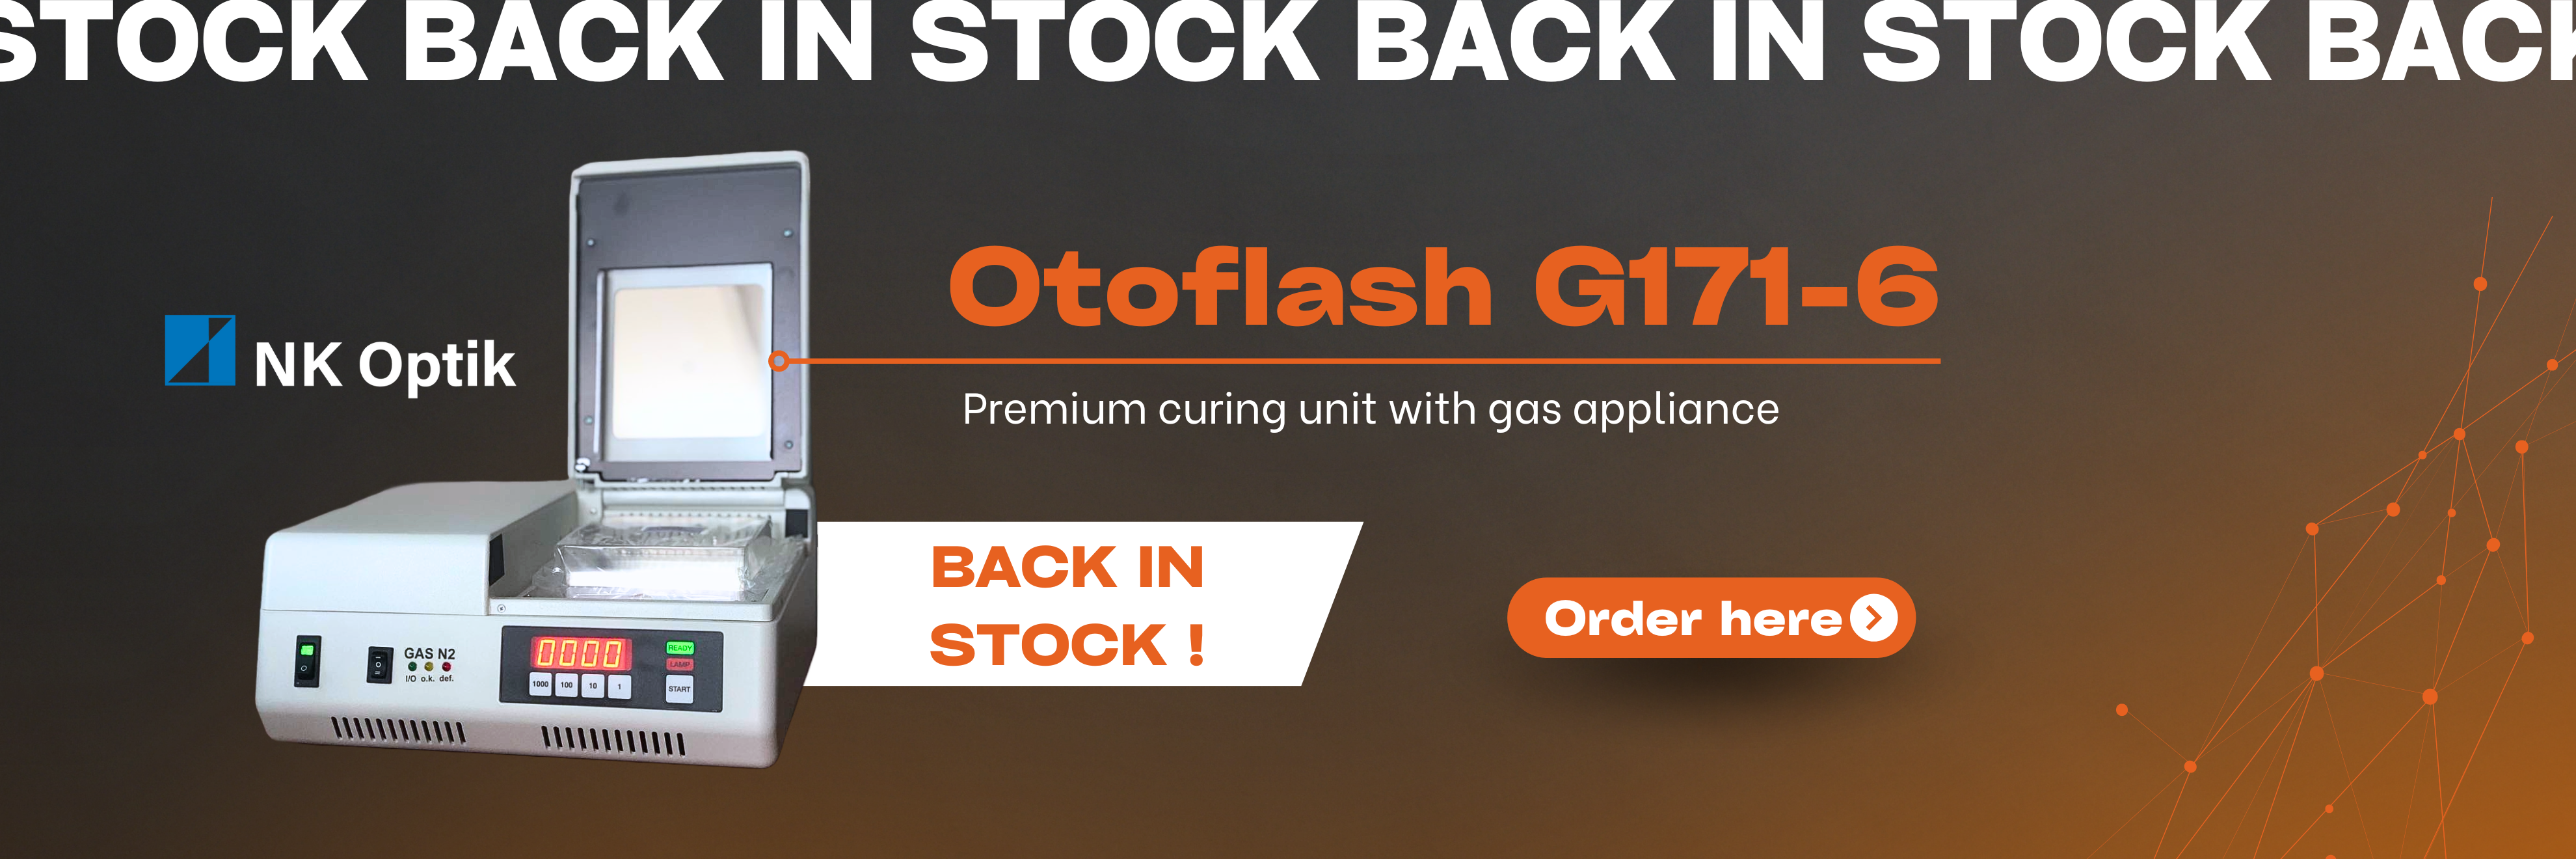 Otoflash back in stock